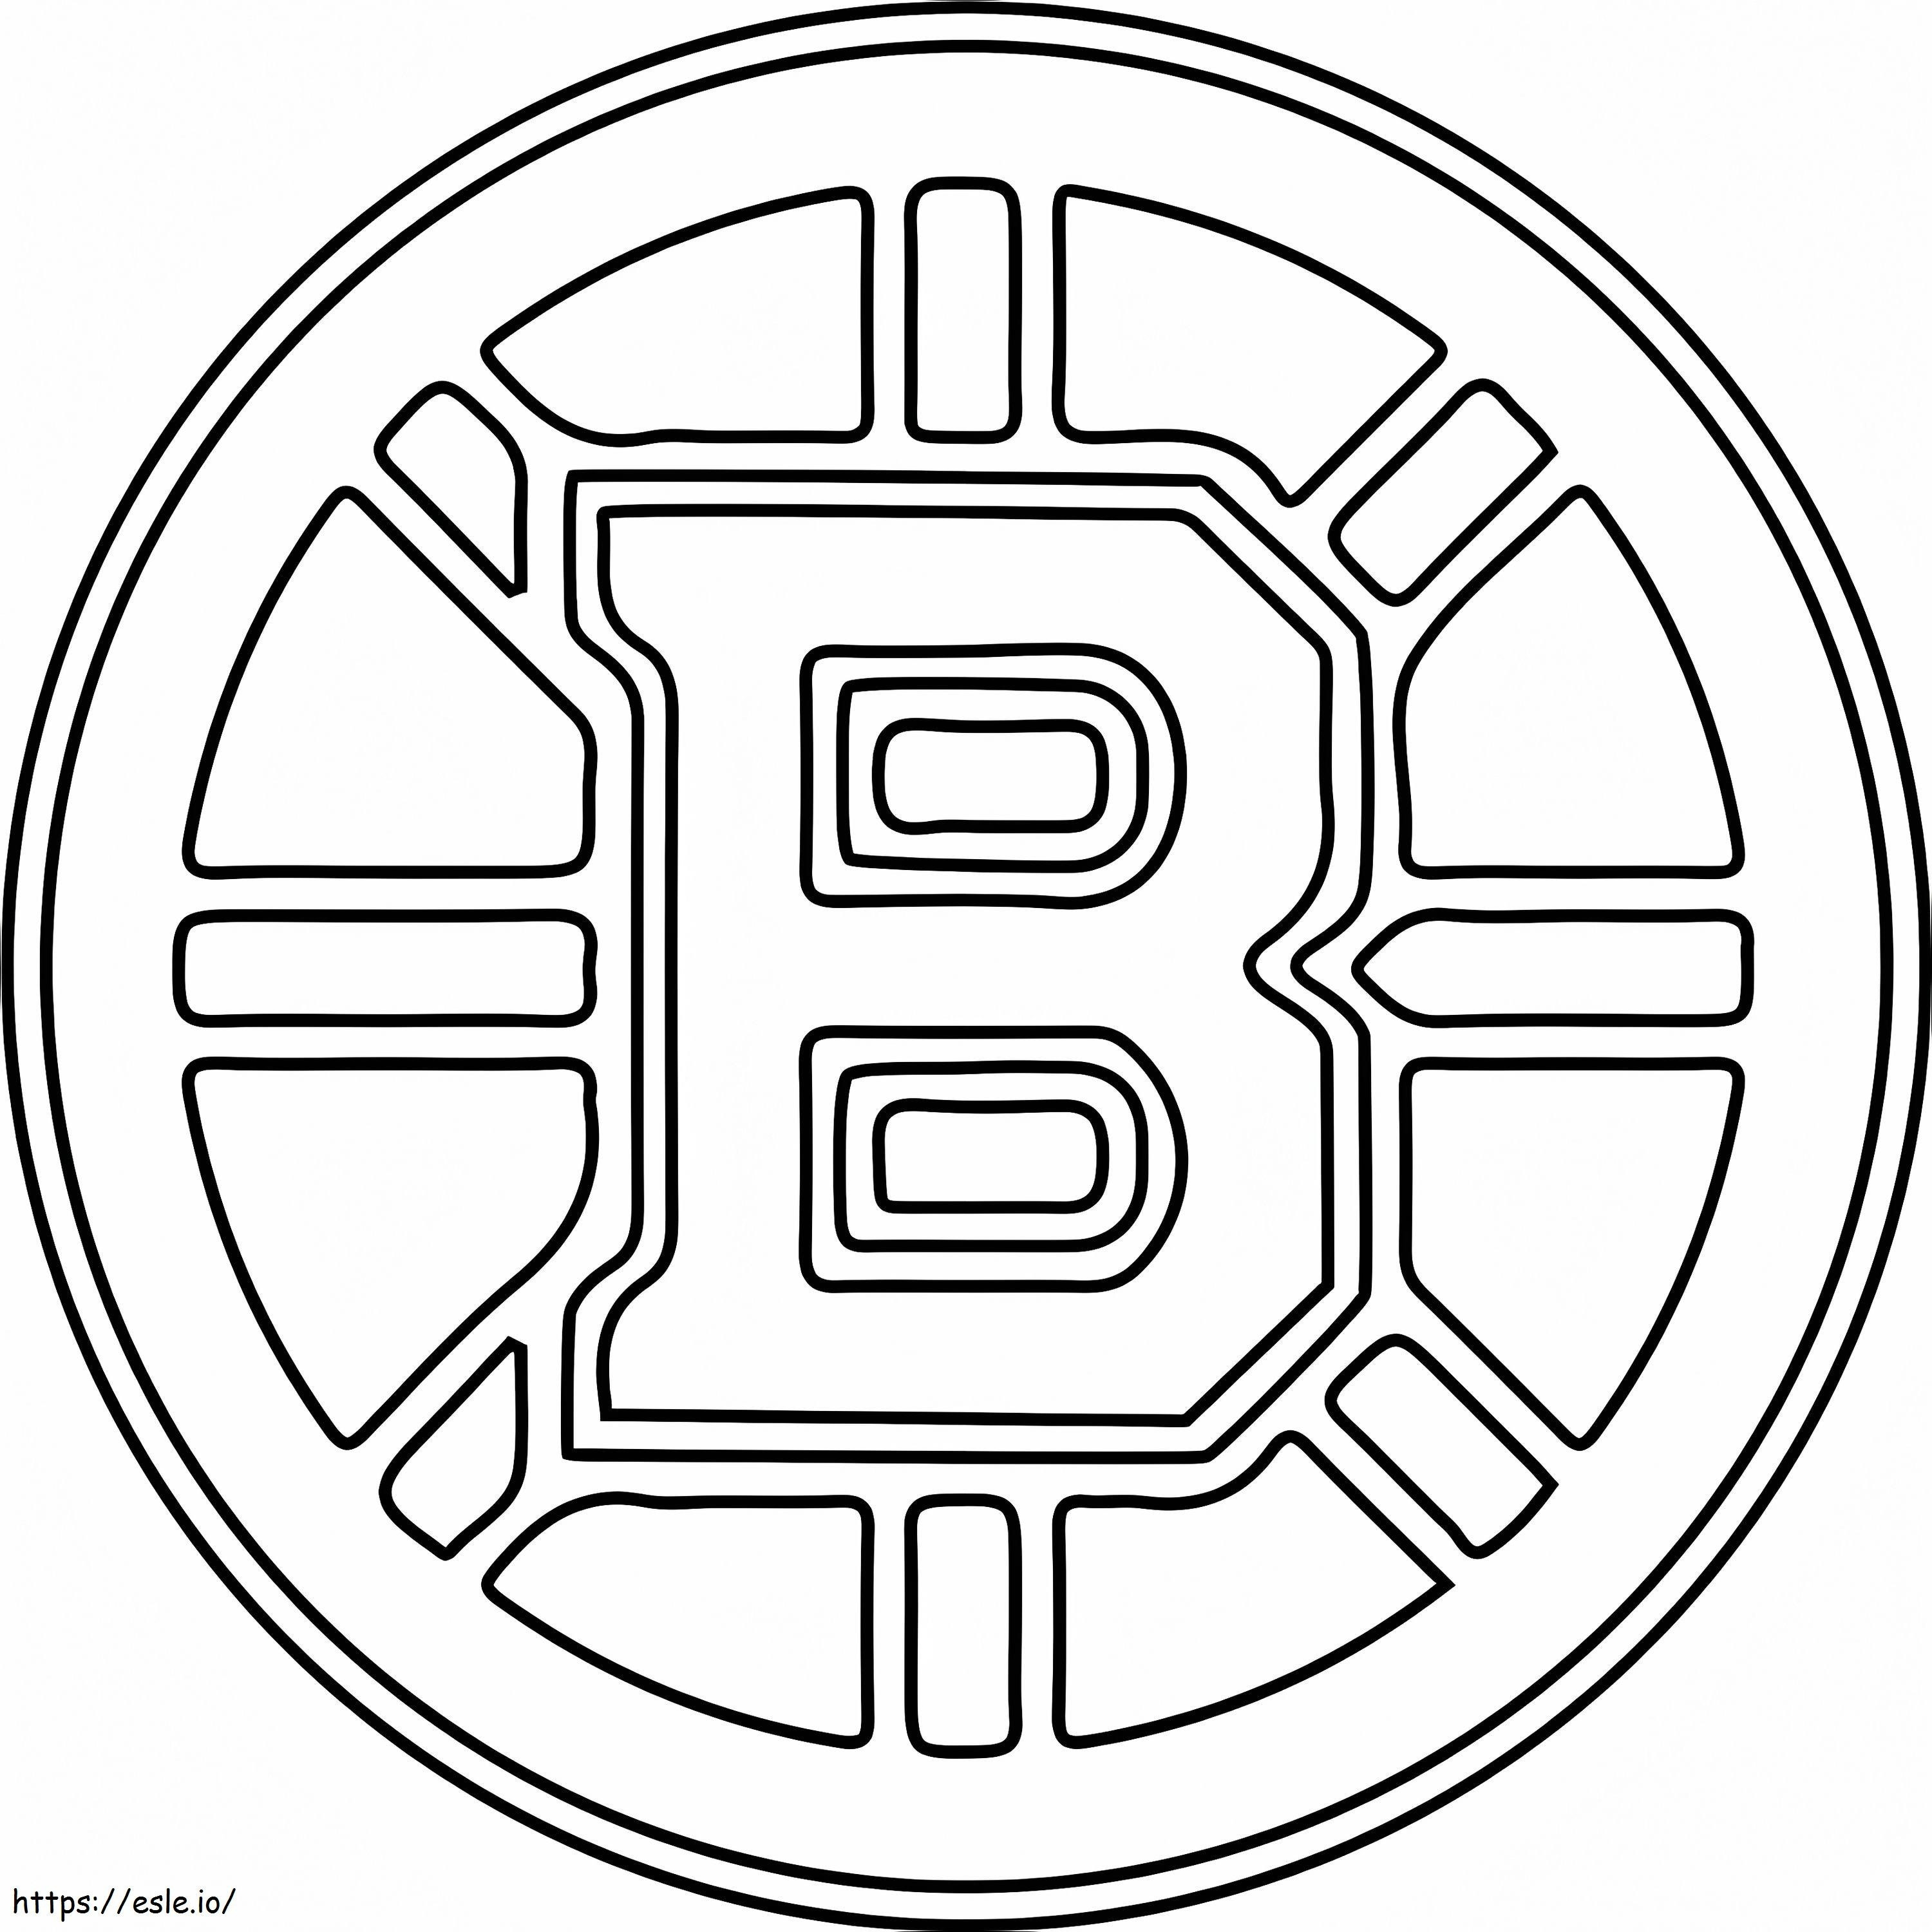 Boston Bruins-Logo ausmalbilder